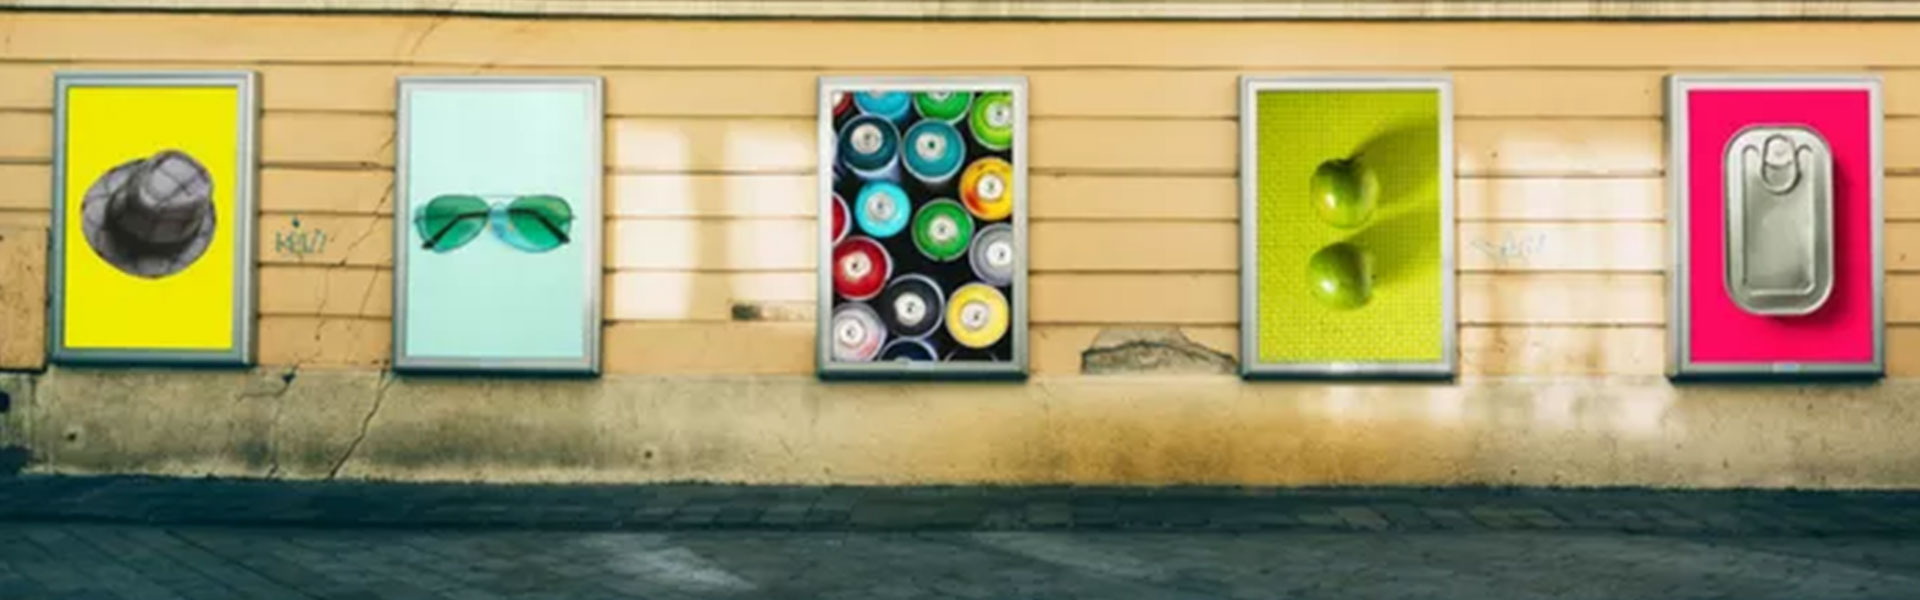 Werbewirkung zu messen, hilft den Erfolg von Werbung zu verstehen. Auf einer Hauswand befinden sich Werbeplakate mit Produkten.